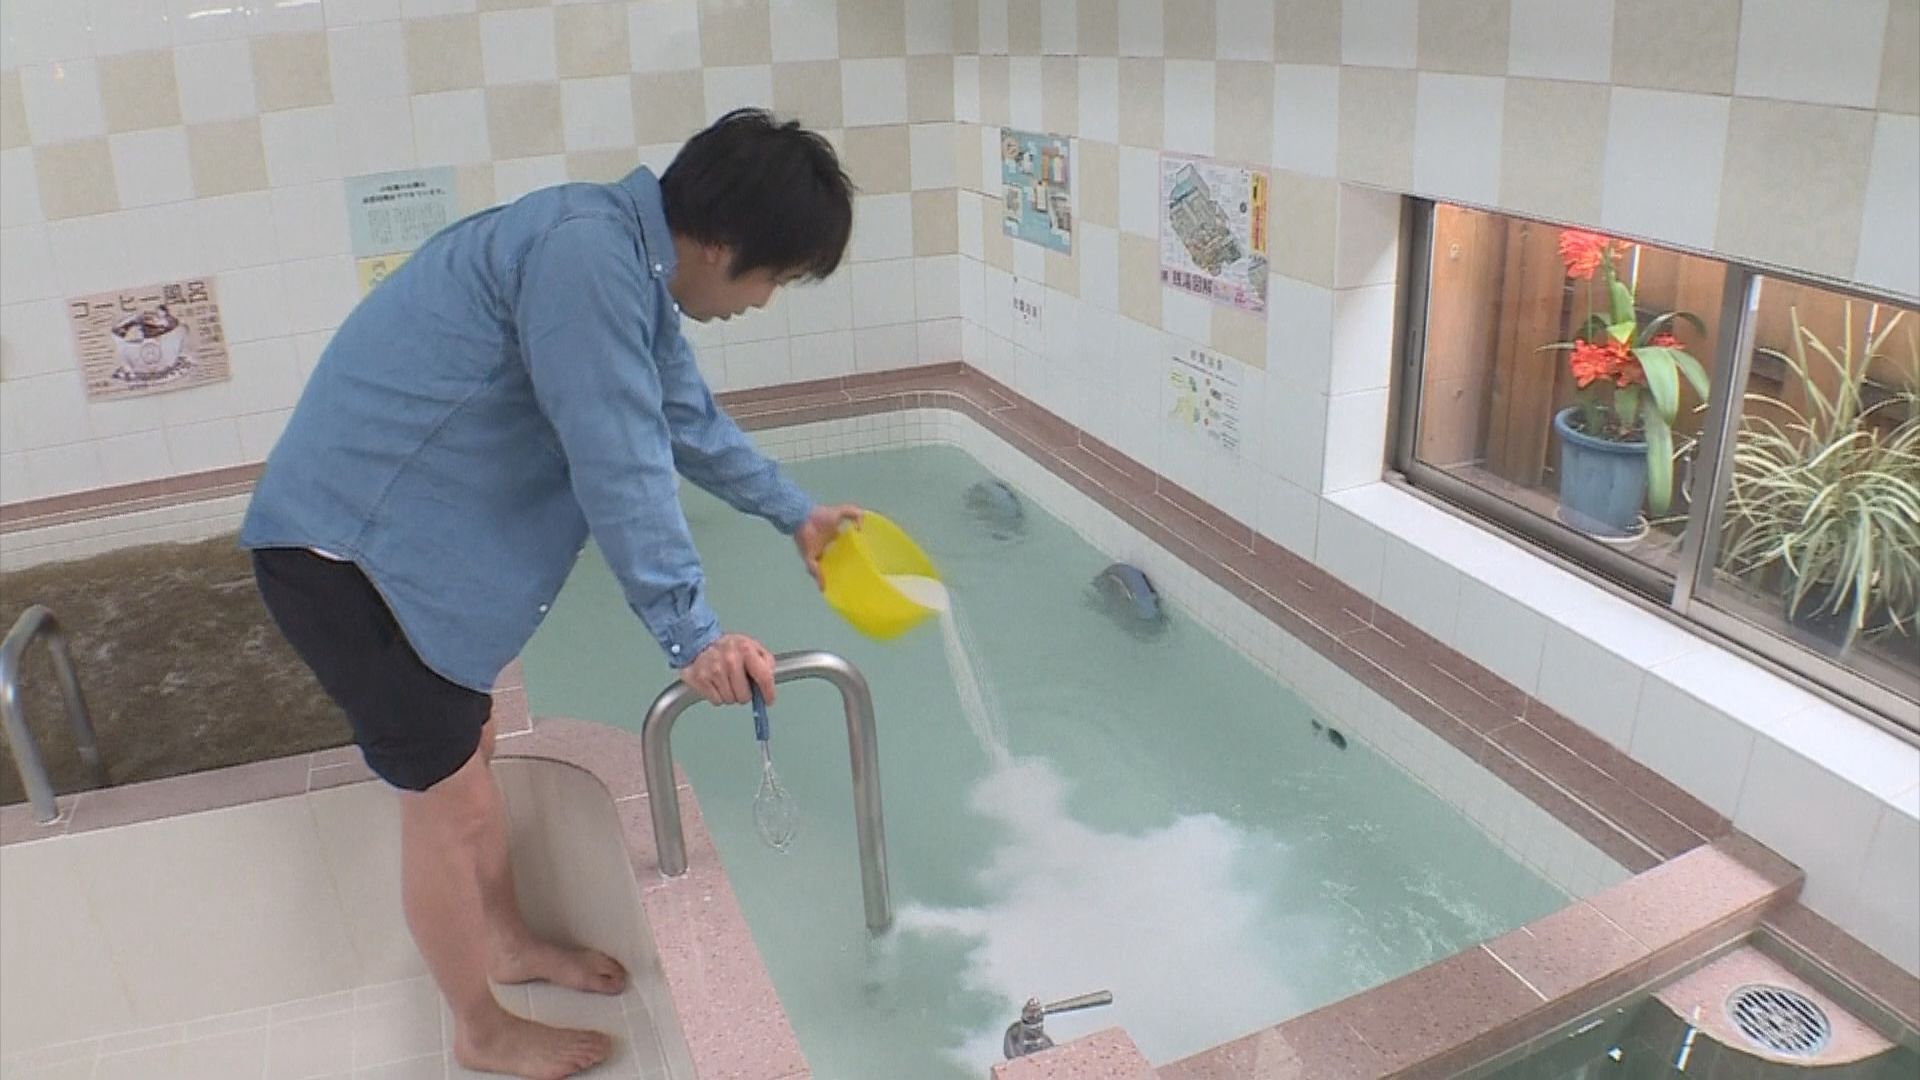 日本舊式澡堂改革吸引年輕客源